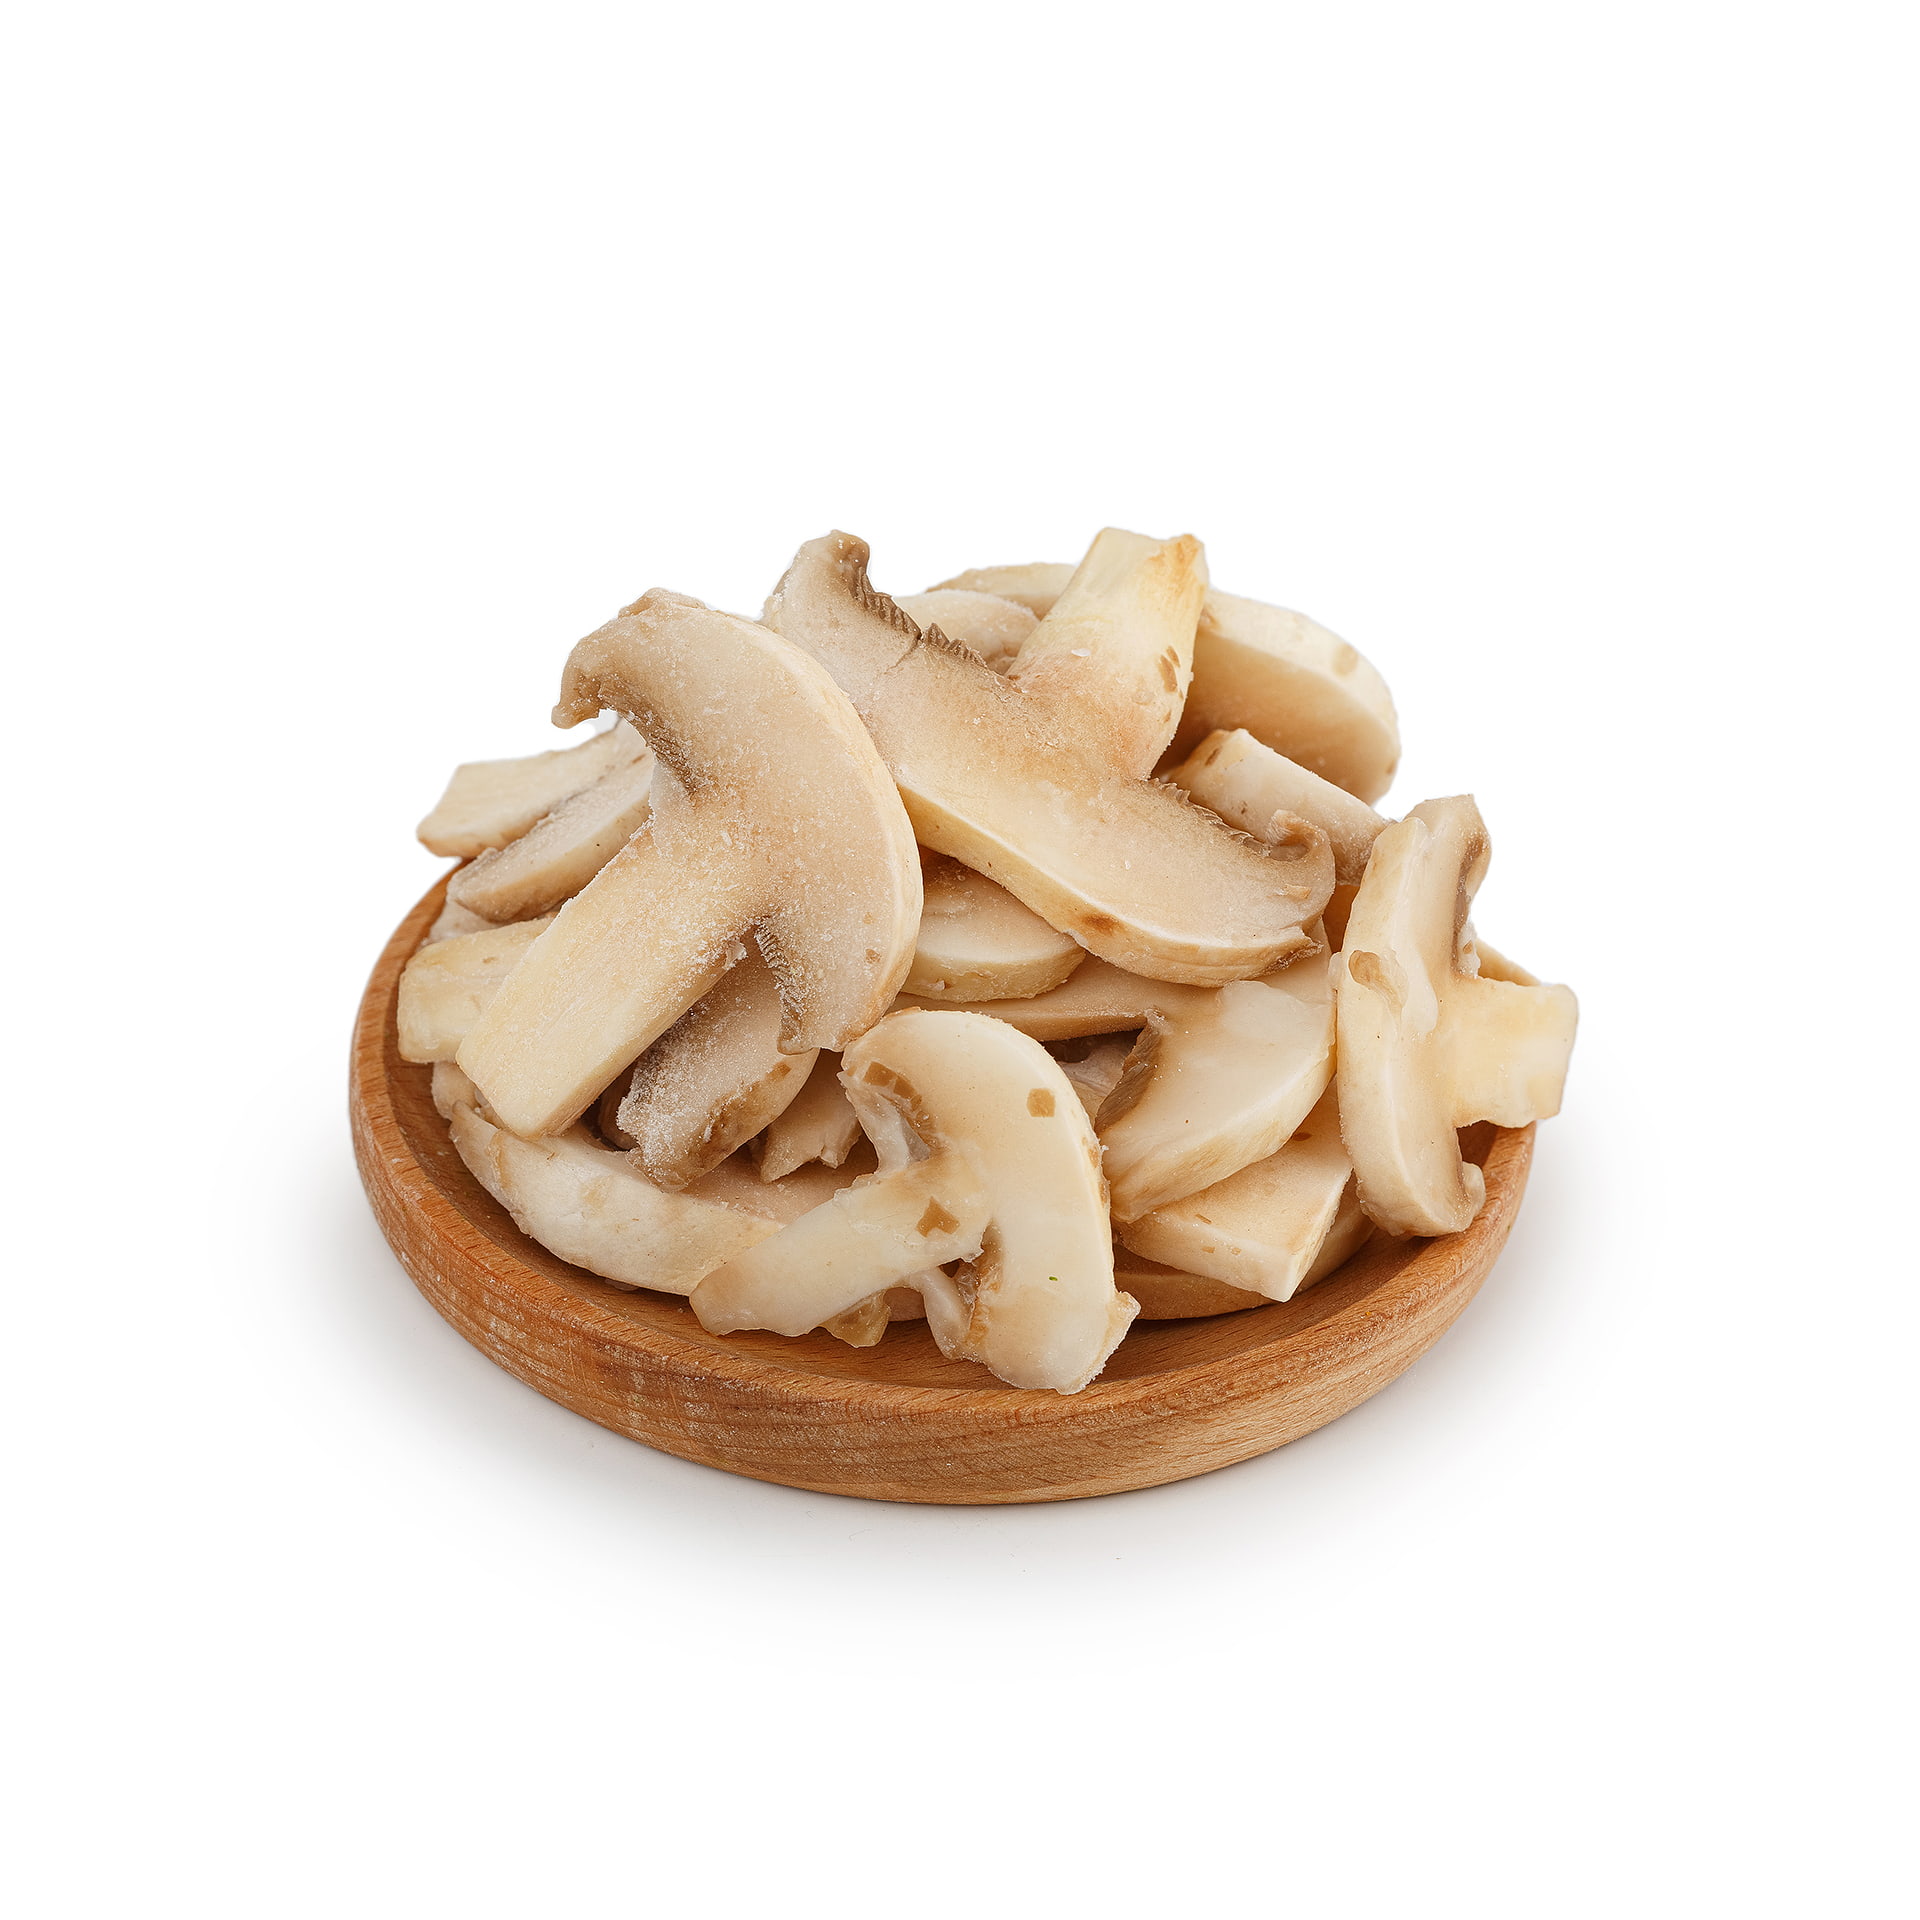 Замороженные грибы шампиньоны резанные 10 кг 288LED, общий вид, купить оптом с доставкой по москве и московской области, недорого, низкая цена